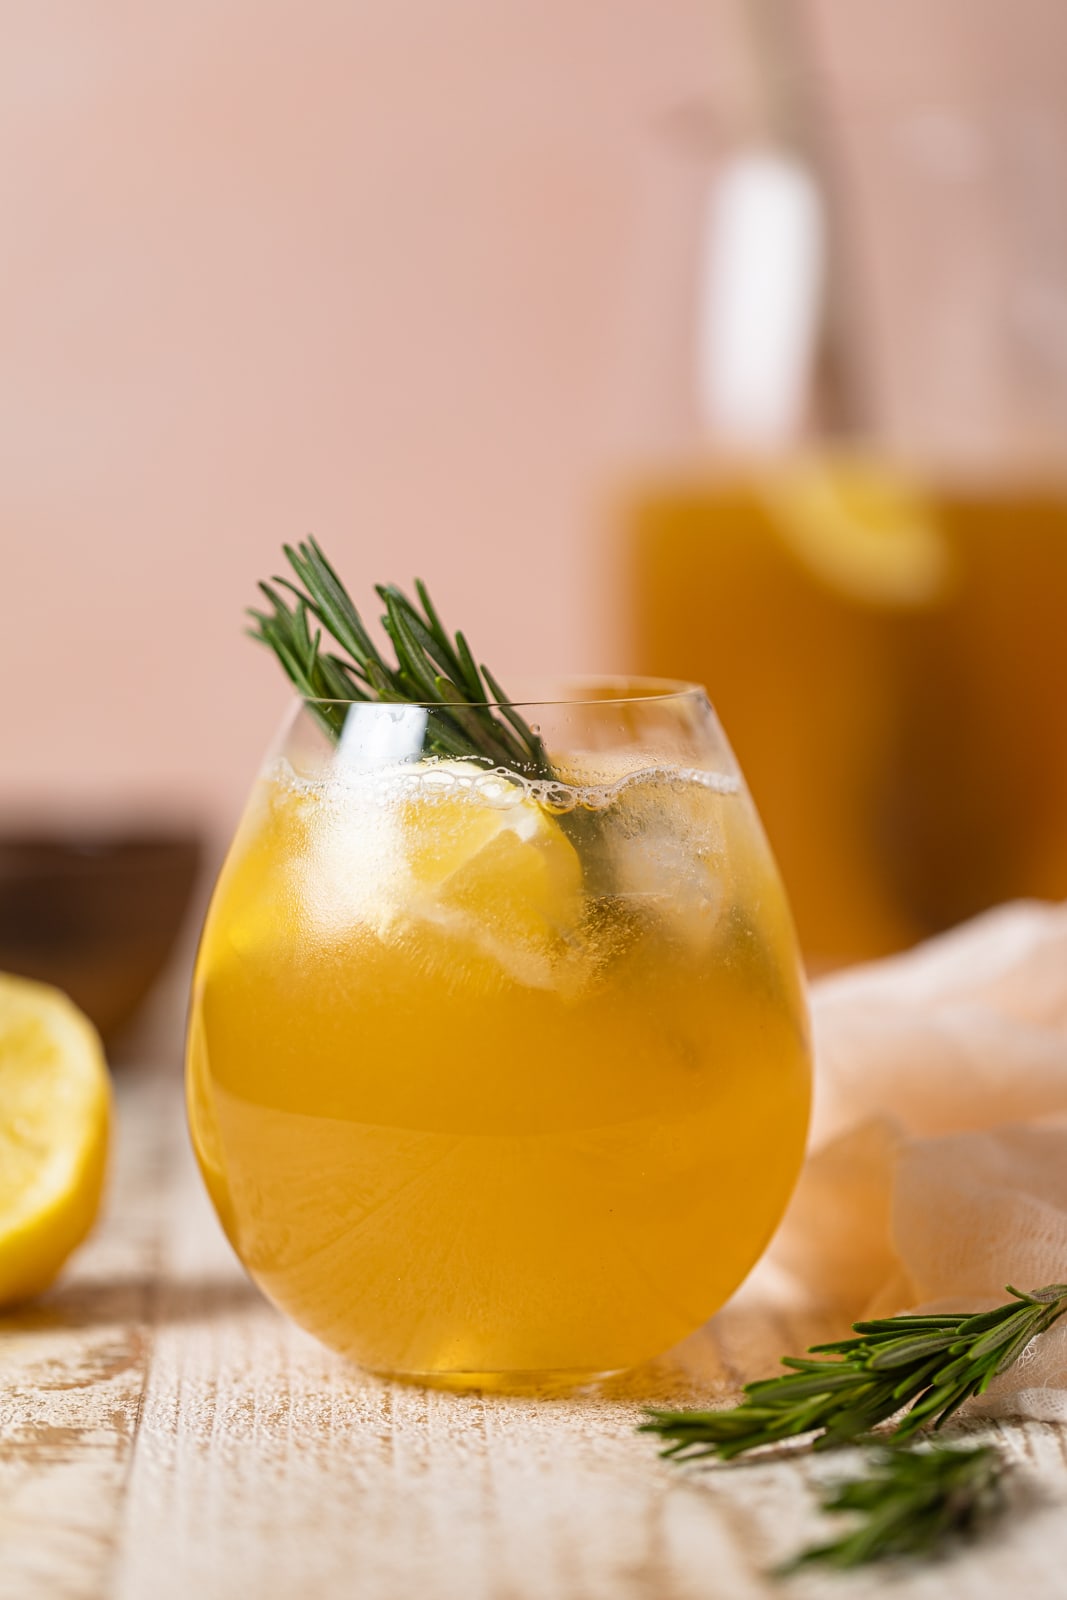 Glass of Apple Cider Vinegar Detox Lemonade with rosemary sprigs